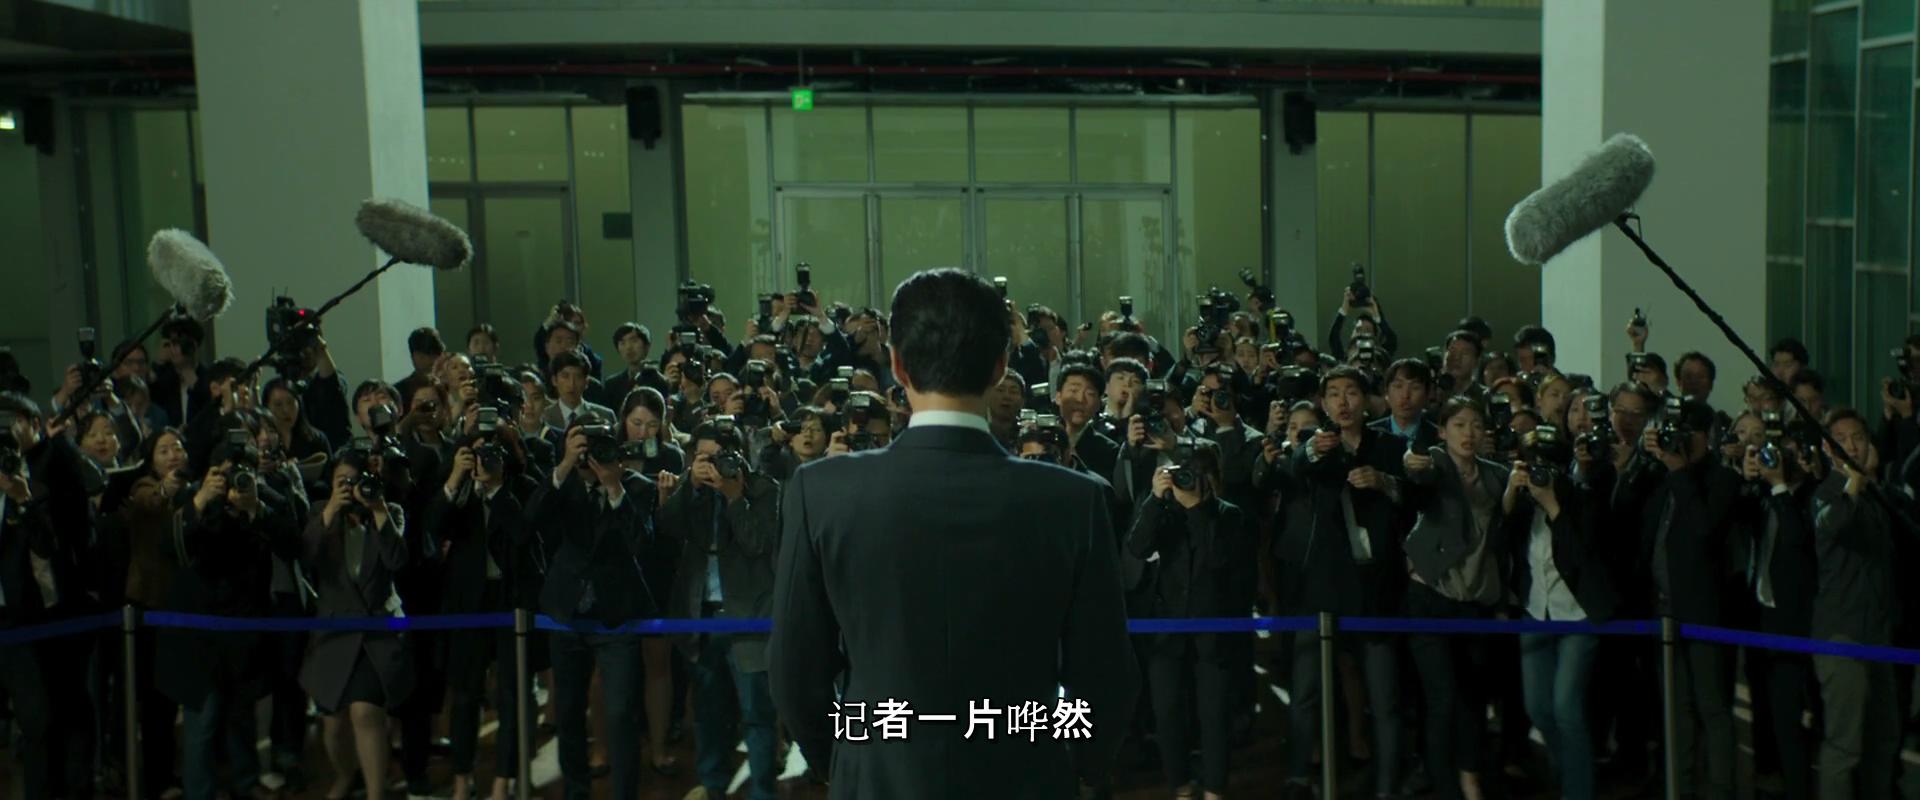 韩国高分电影《王者》，除了政治的腐败，更有一个男人的奋斗